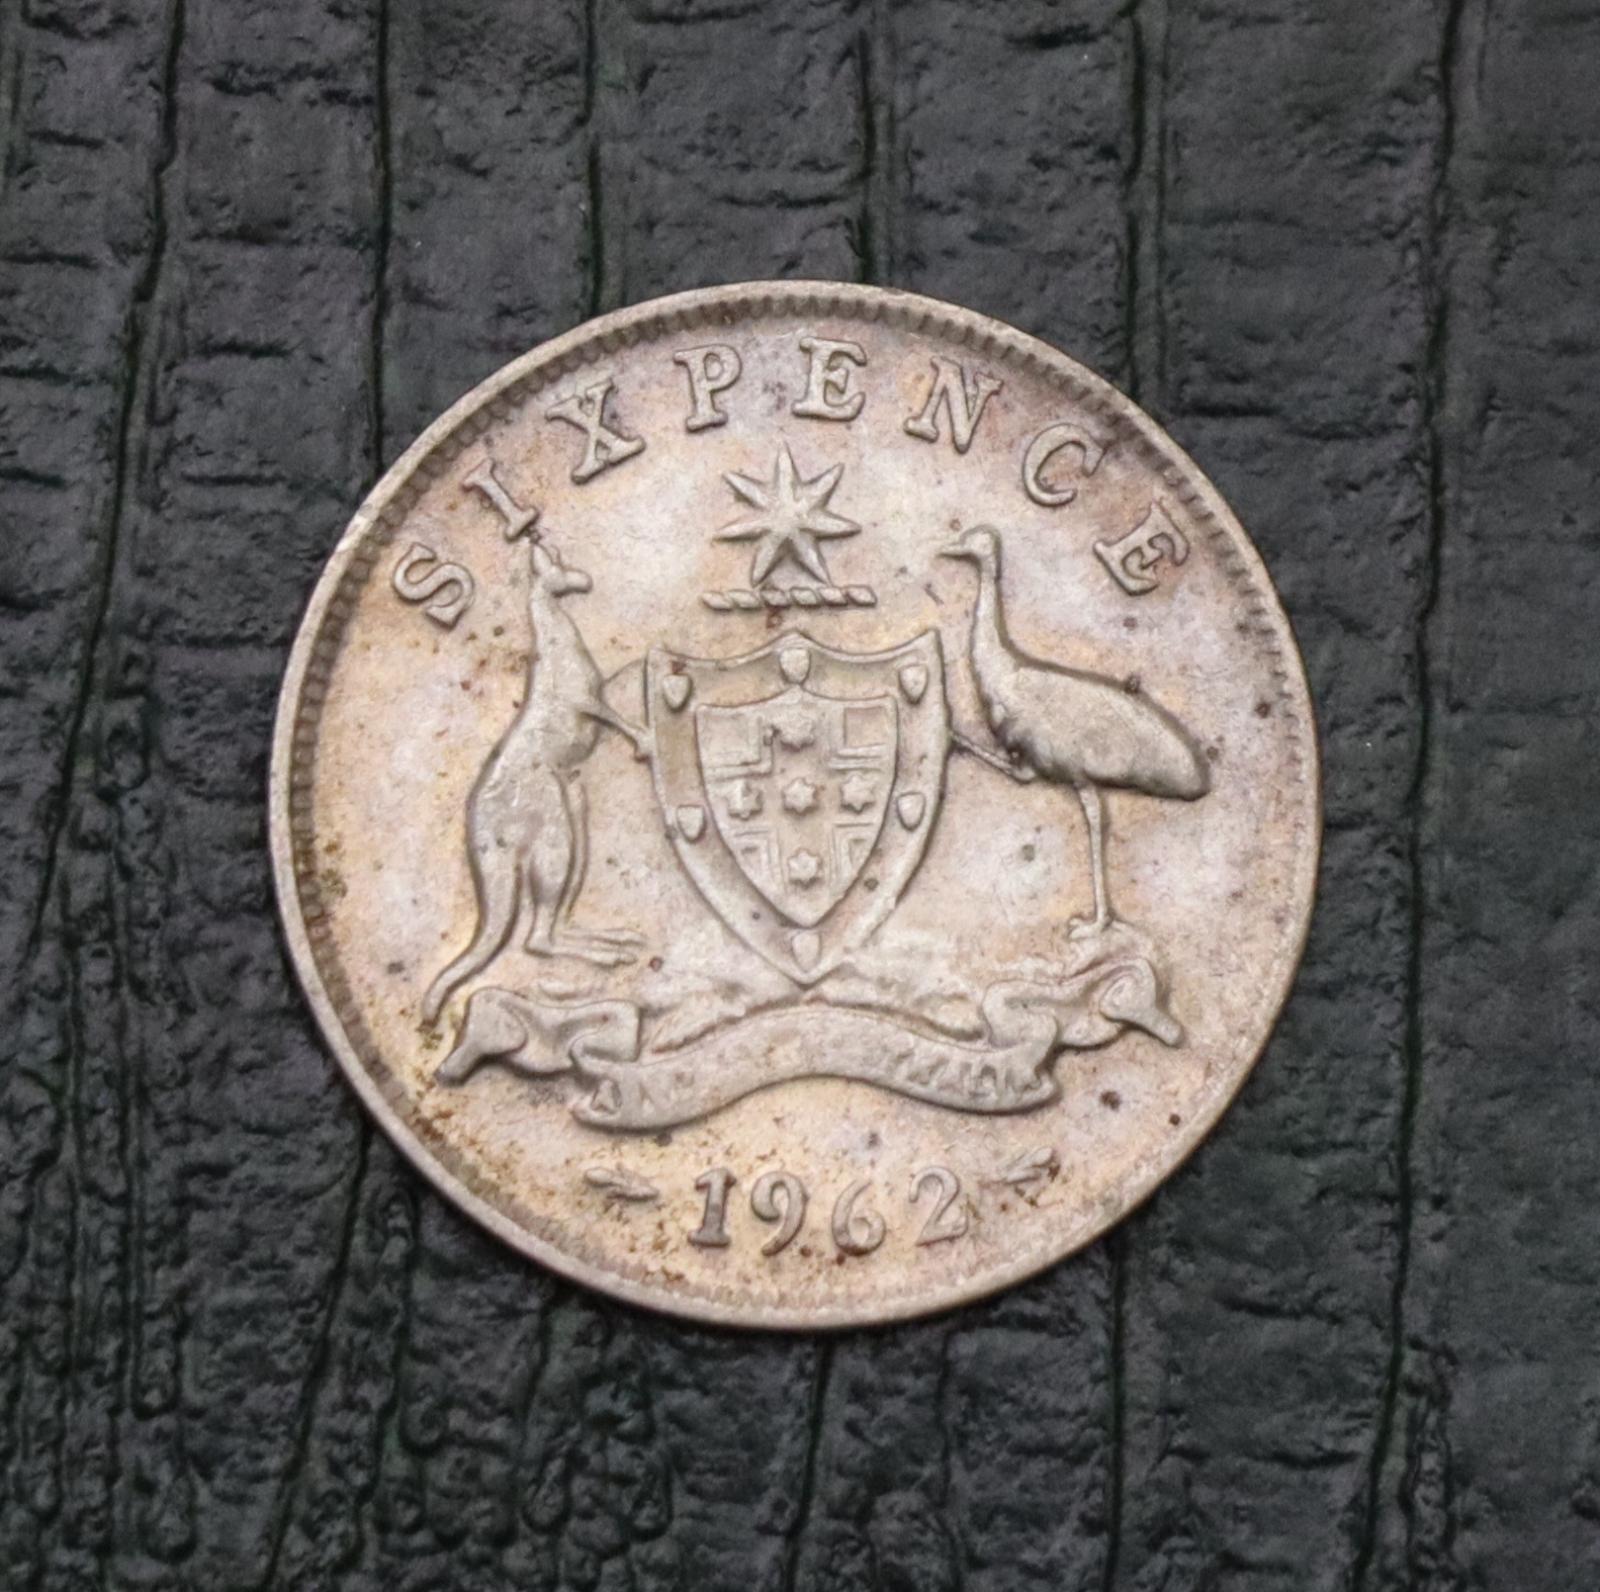 Strieborná 6 Pence 1962 - Alžbeta II. - Austrália! - Zberateľstvo